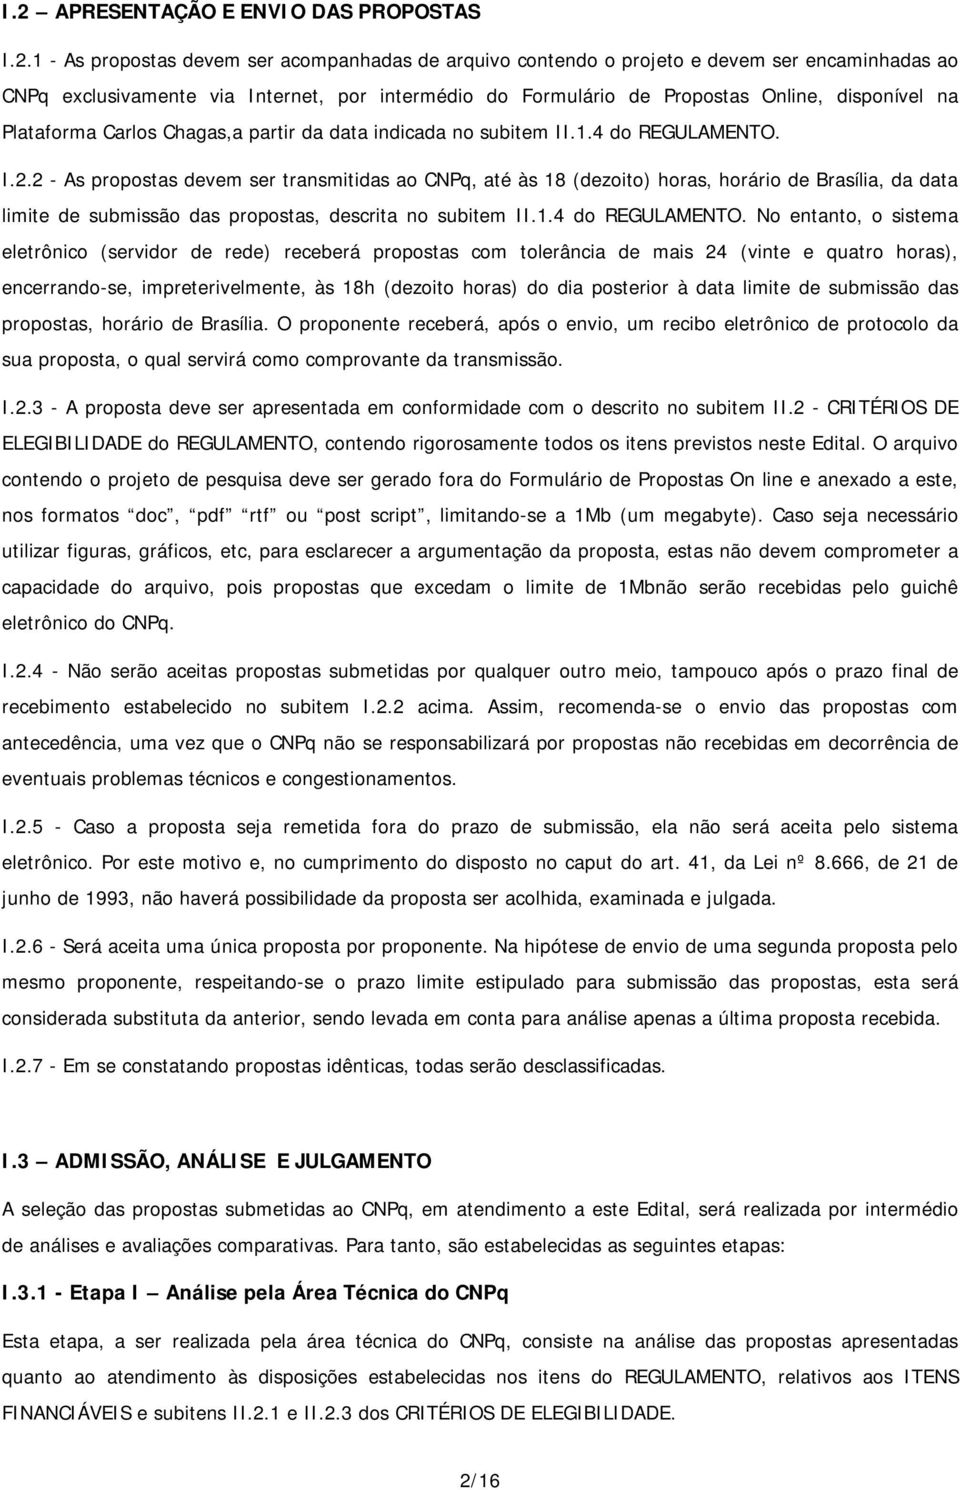 2 - As propostas devem ser transmitidas ao CNPq, até às 18 (dezoito) horas, horário de Brasília, da data limite de submissão das propostas, descrita no subitem II.1.4 do REGULAMENTO.